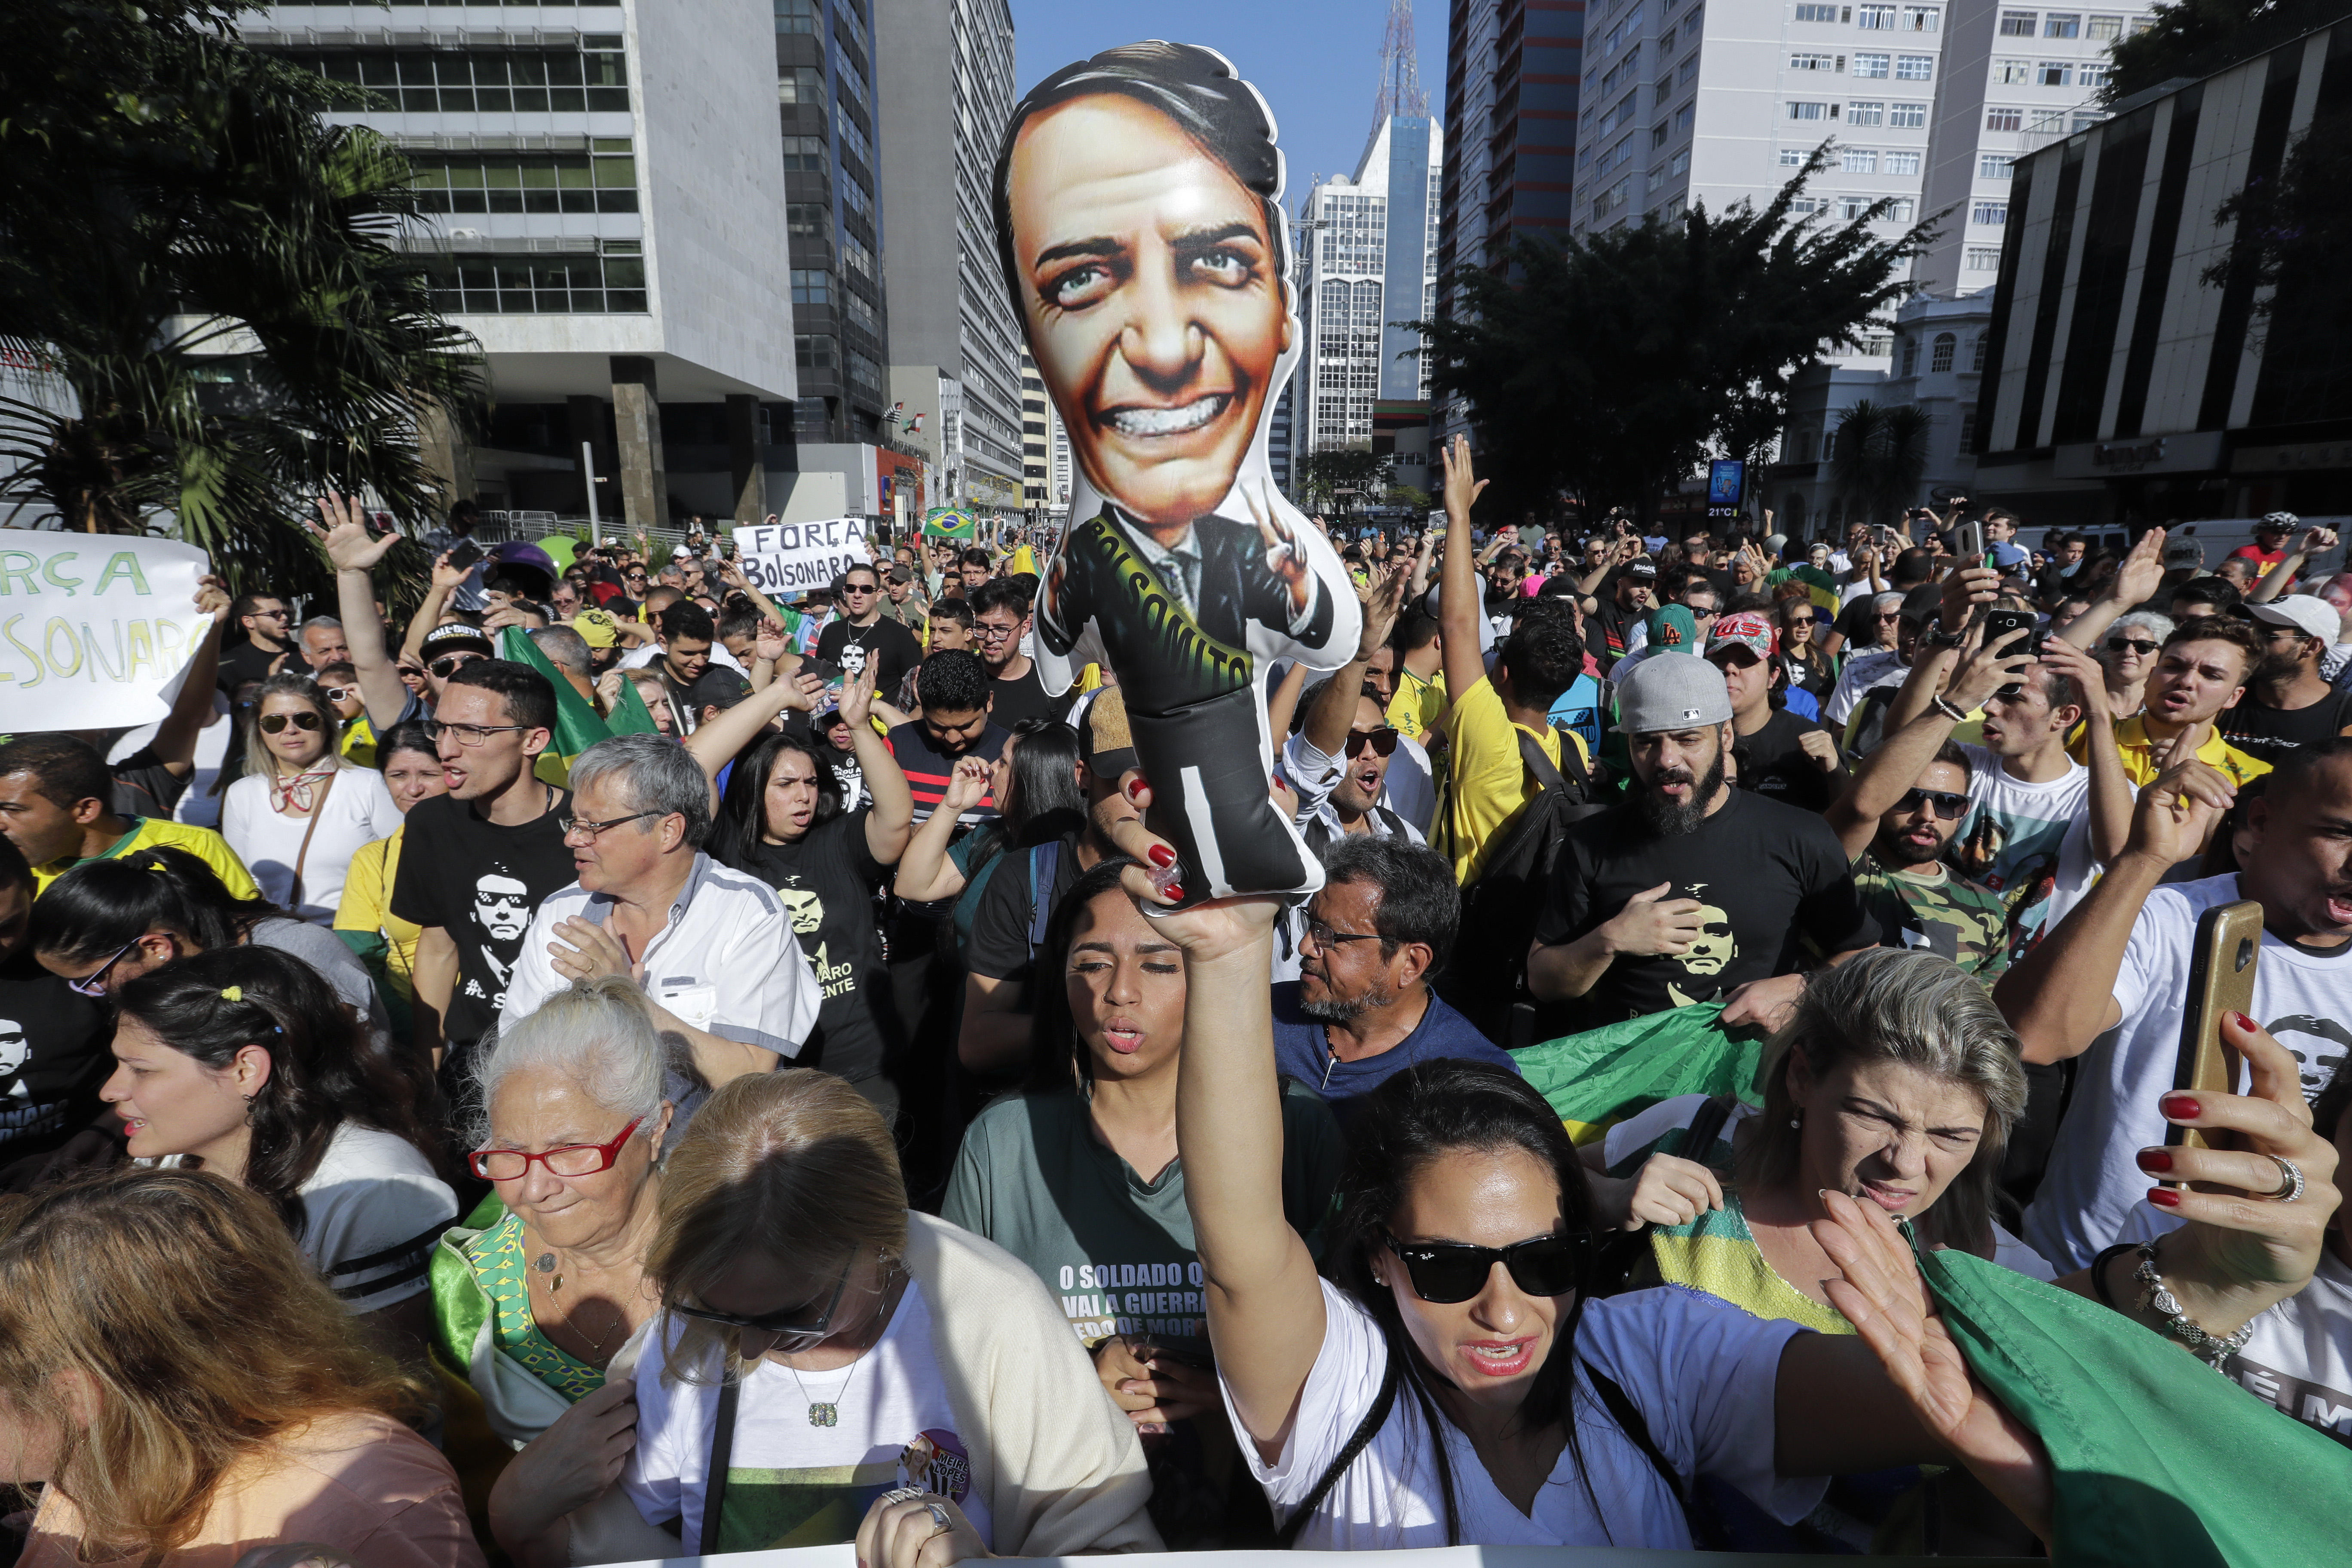 Seguidores manifestaron su apoyo al candidato Bolsonaro en Brasil tras apuñalamiento